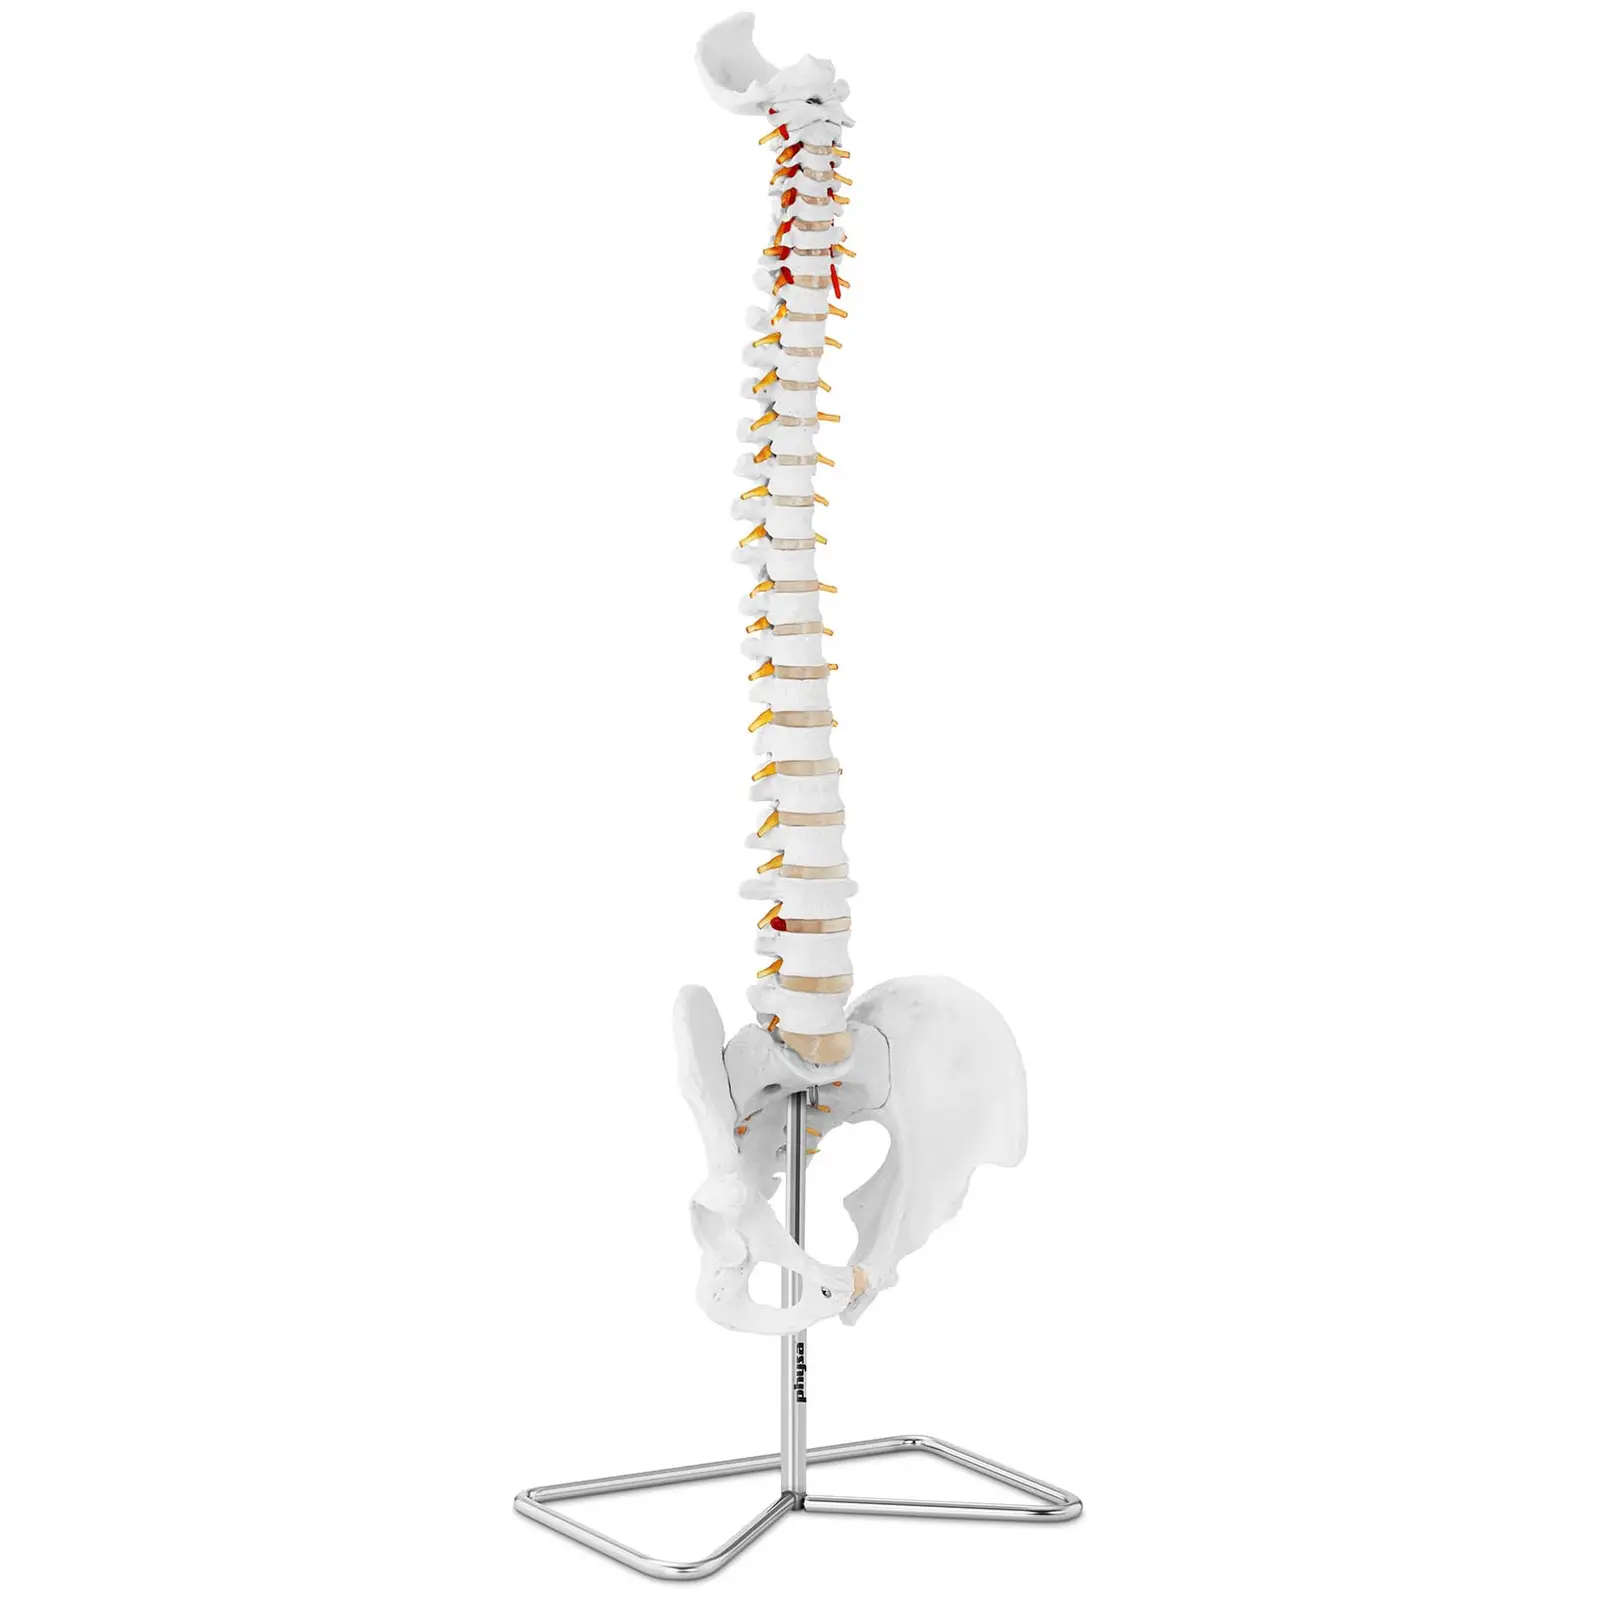 Maquette anatomique pelvis humain avec colonne vertébrale - grandeur nature